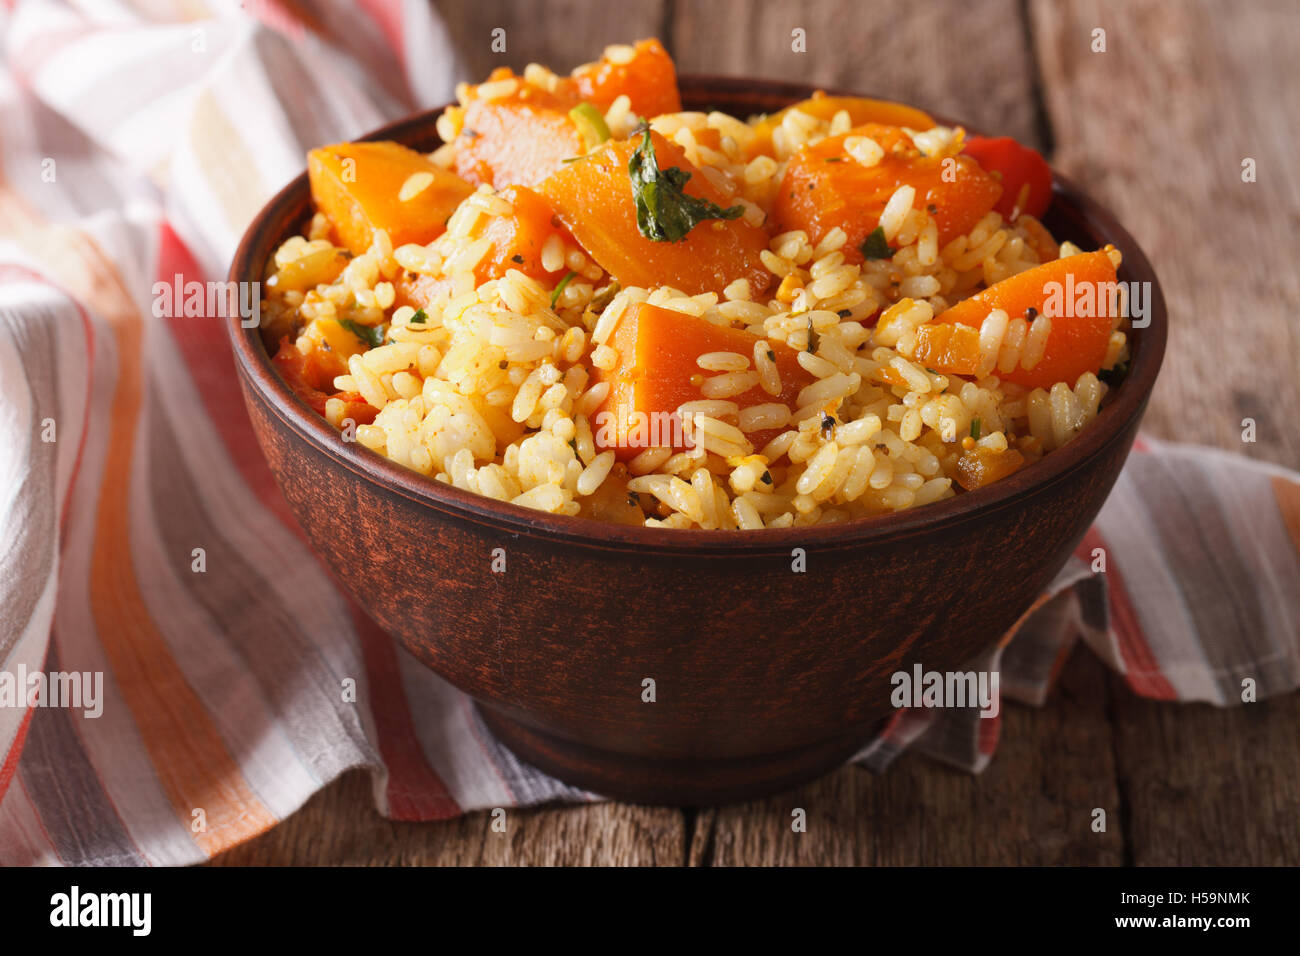 Cibo vegetariano: riso con la zucca in una ciotola sul tavolo. Posizione orizzontale Foto Stock